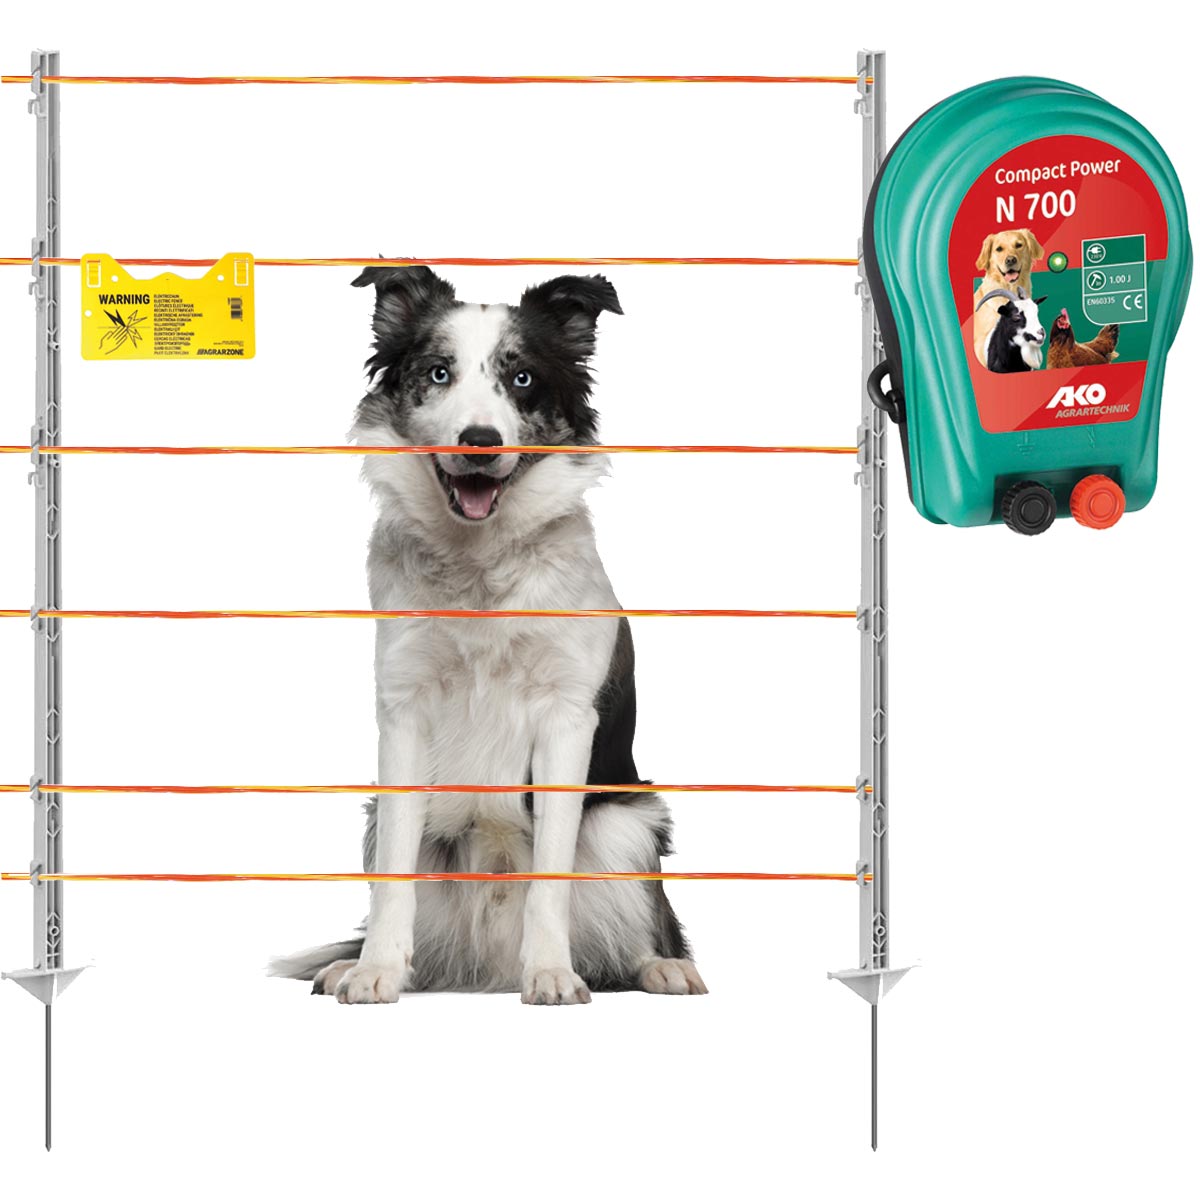 Agrarzone kit recinto per cani N700 230V, 1J, filo elettrico 250 m, giallo/arancione